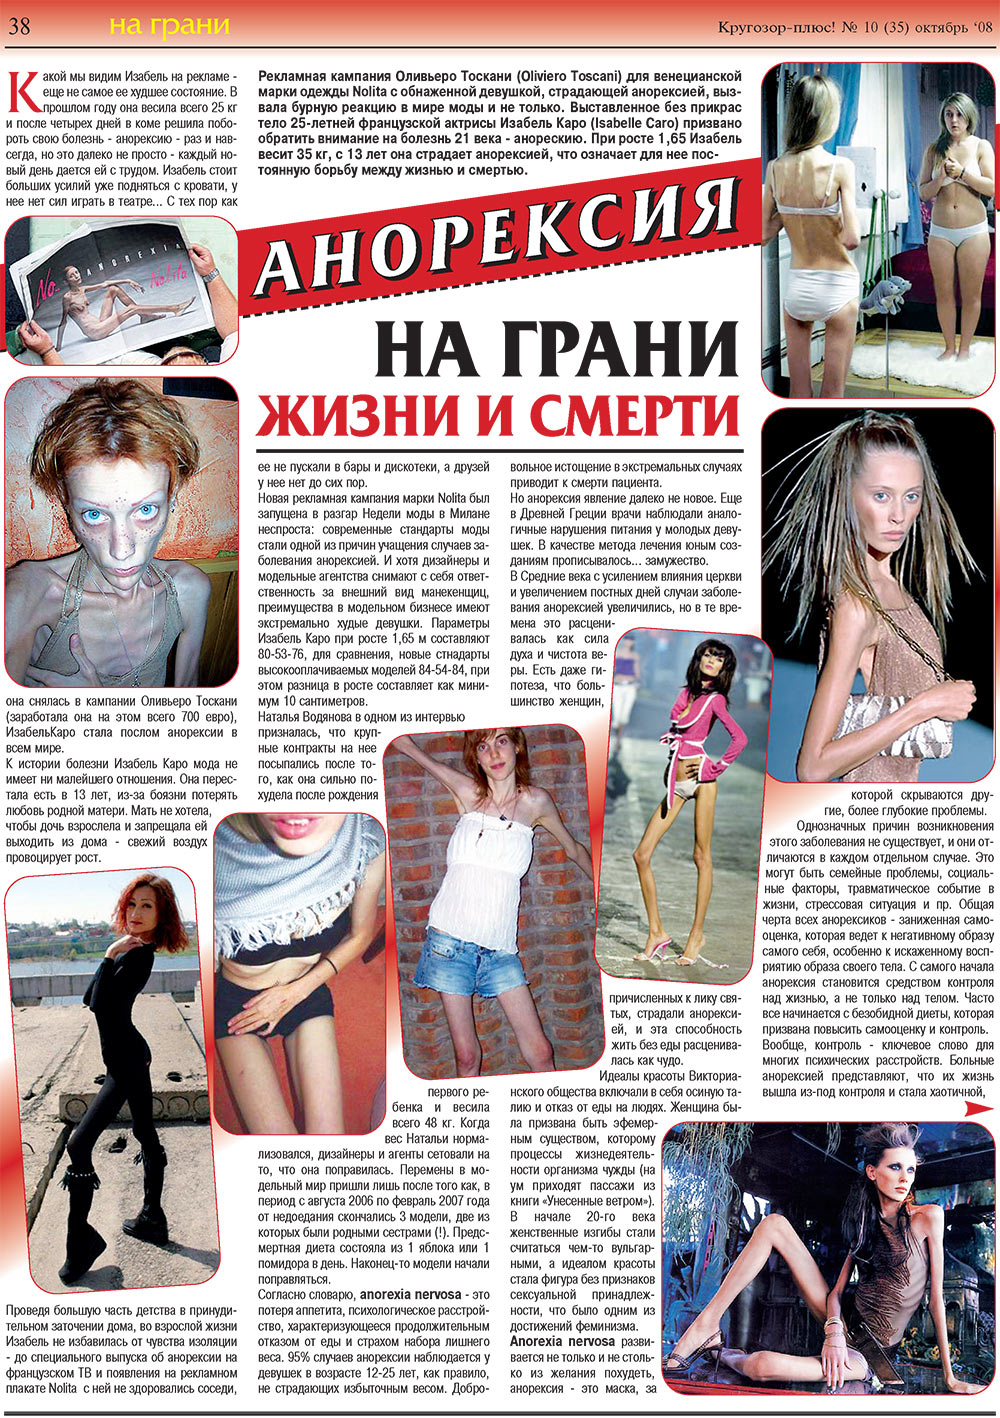 Кругозор плюс!, газета. 2008 №10 стр.38